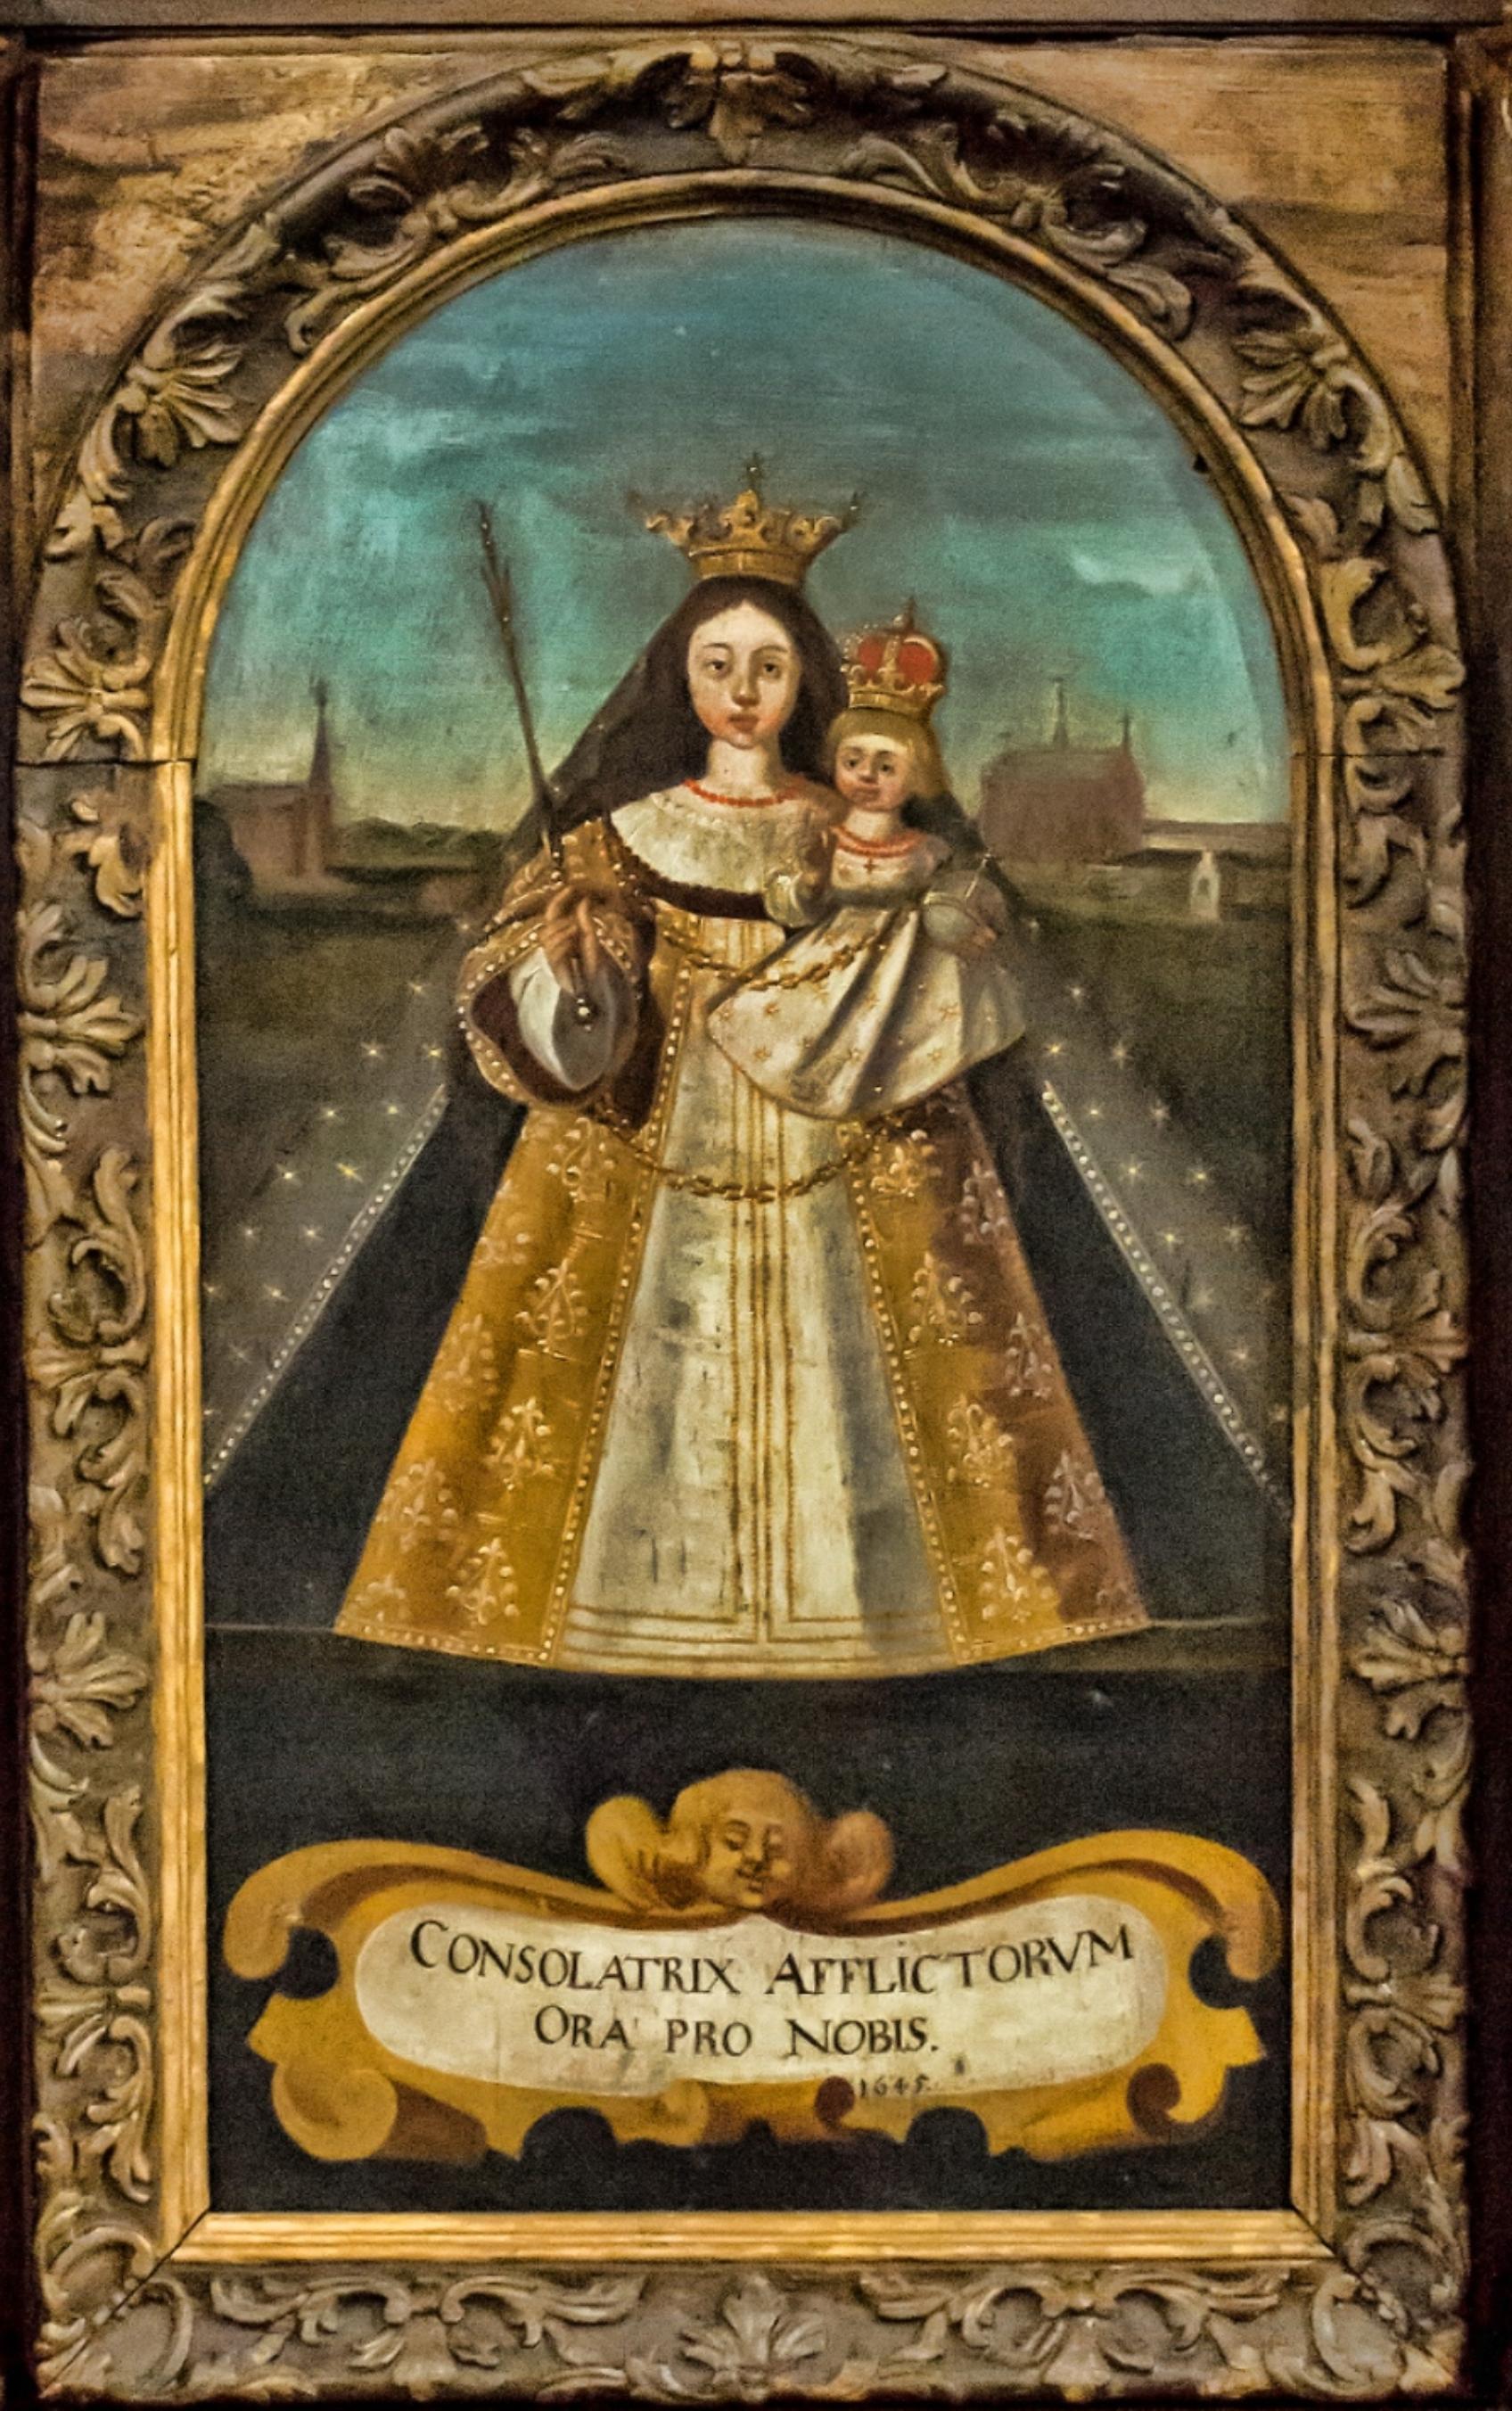 Wand-Altärchen mit Bild der Kevelaer-Madonna, 1645 (c) Karl-Heinz Wagemans